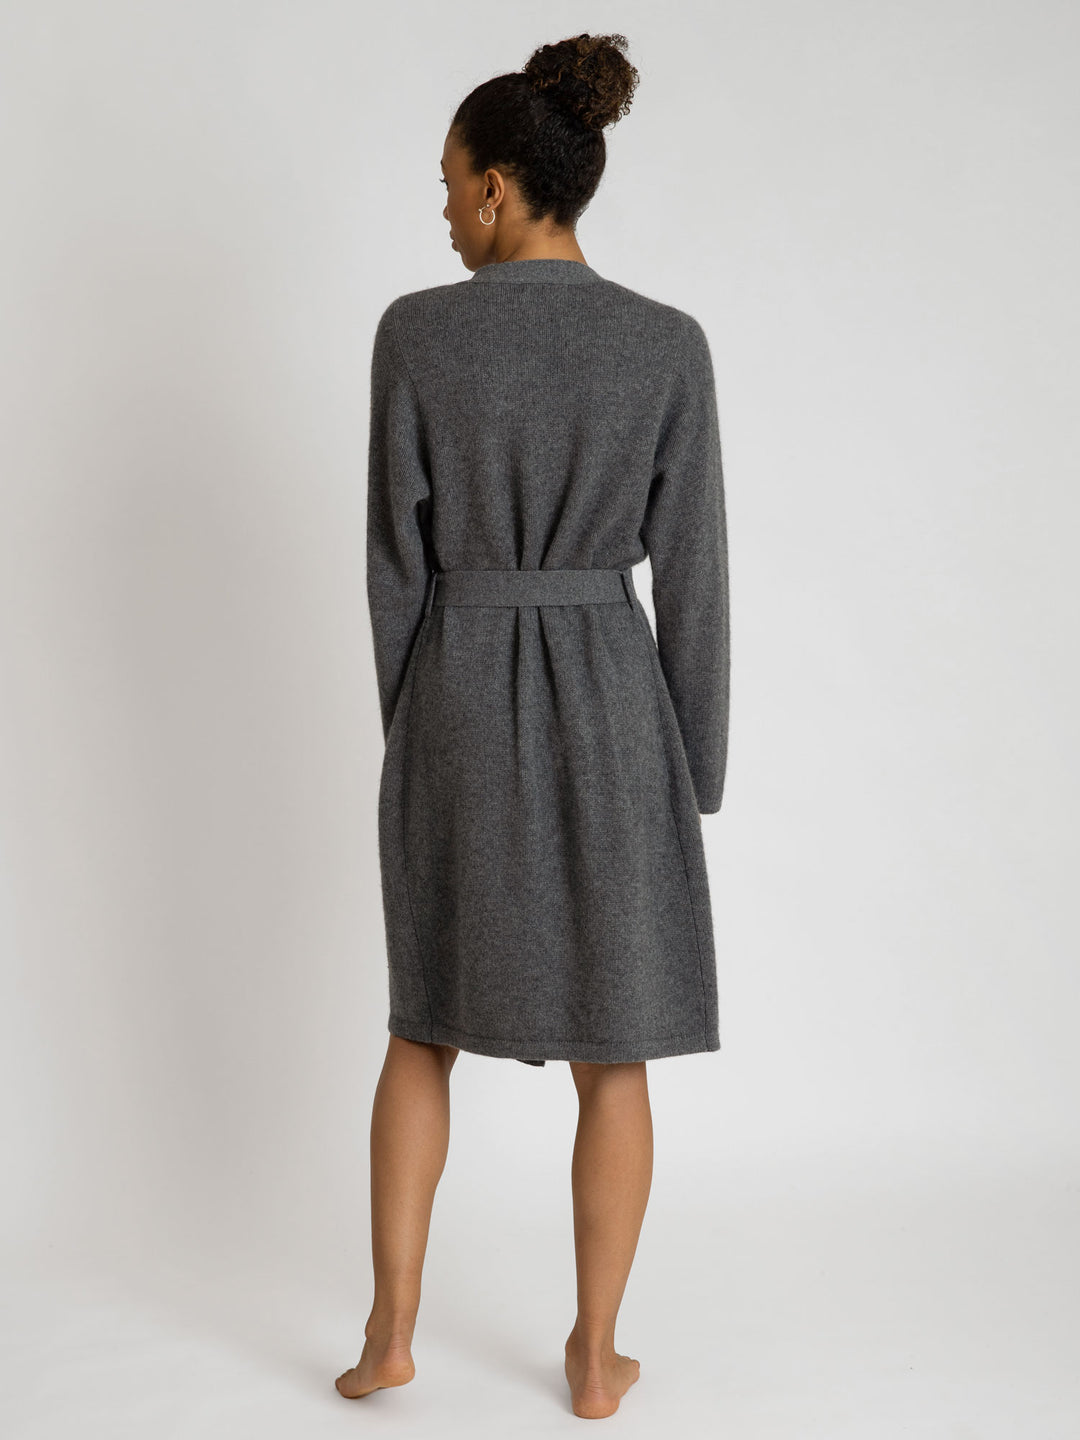 Cashmere robe Lux in 100% cashmere by Kashmina, dark grey. Scandinavian design.